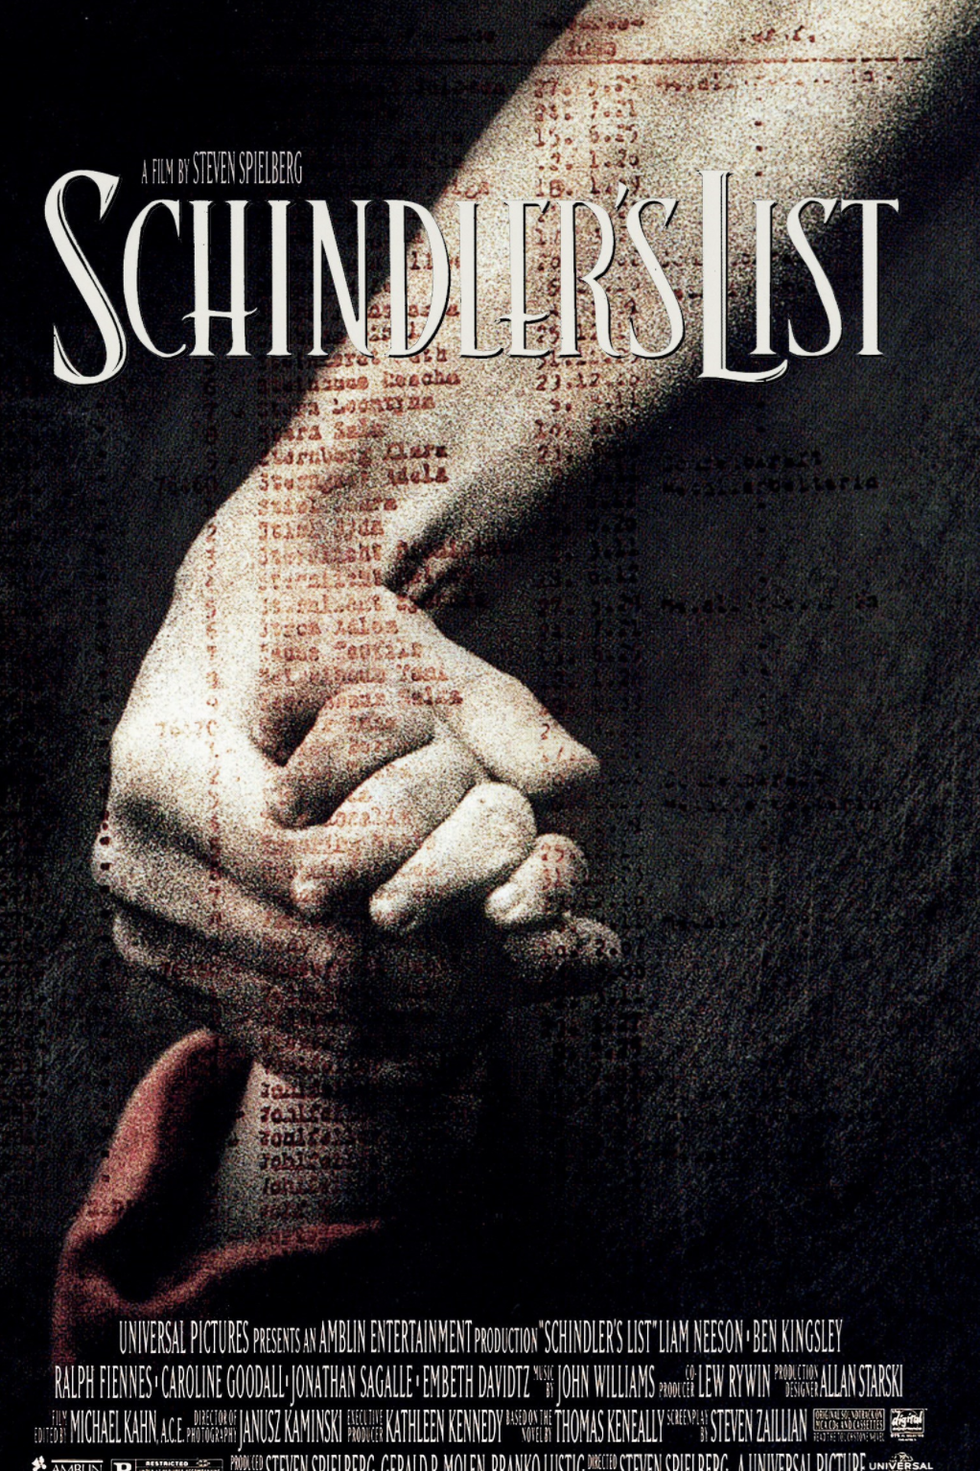 'schindler's list' movie poster